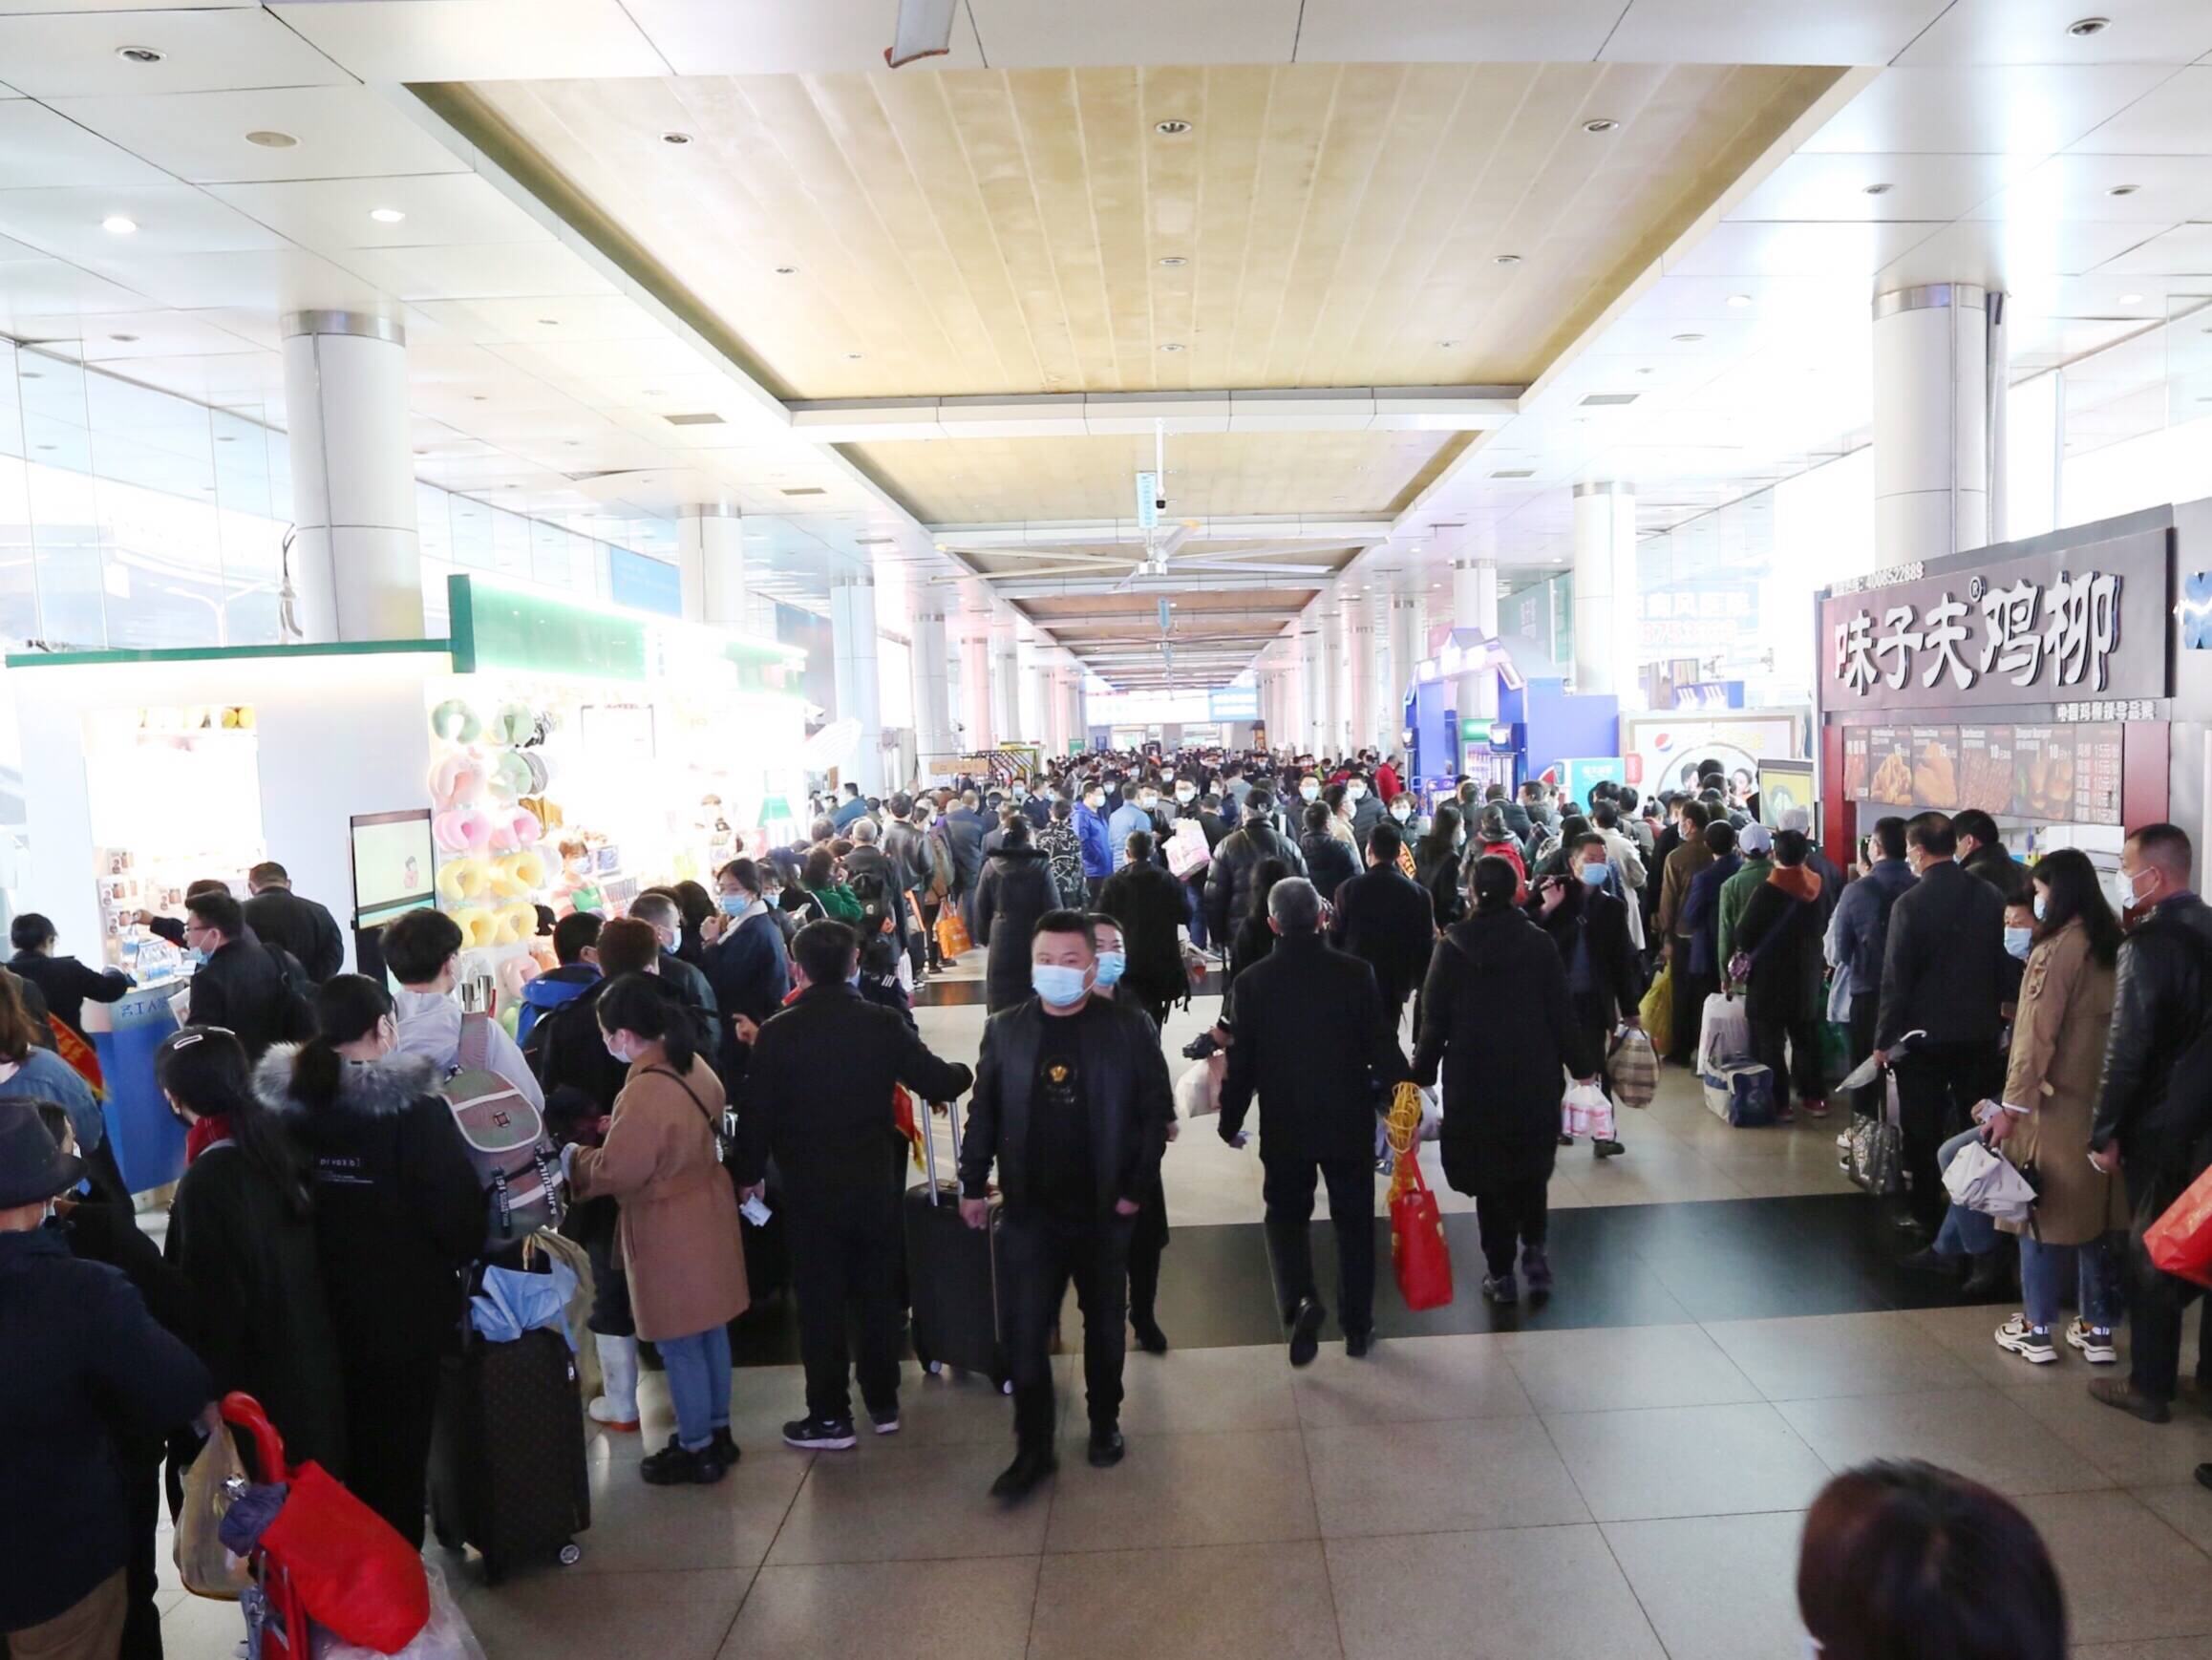 清明小长假济南公路客运发送旅客19.54万人次 同比增长178.37 %